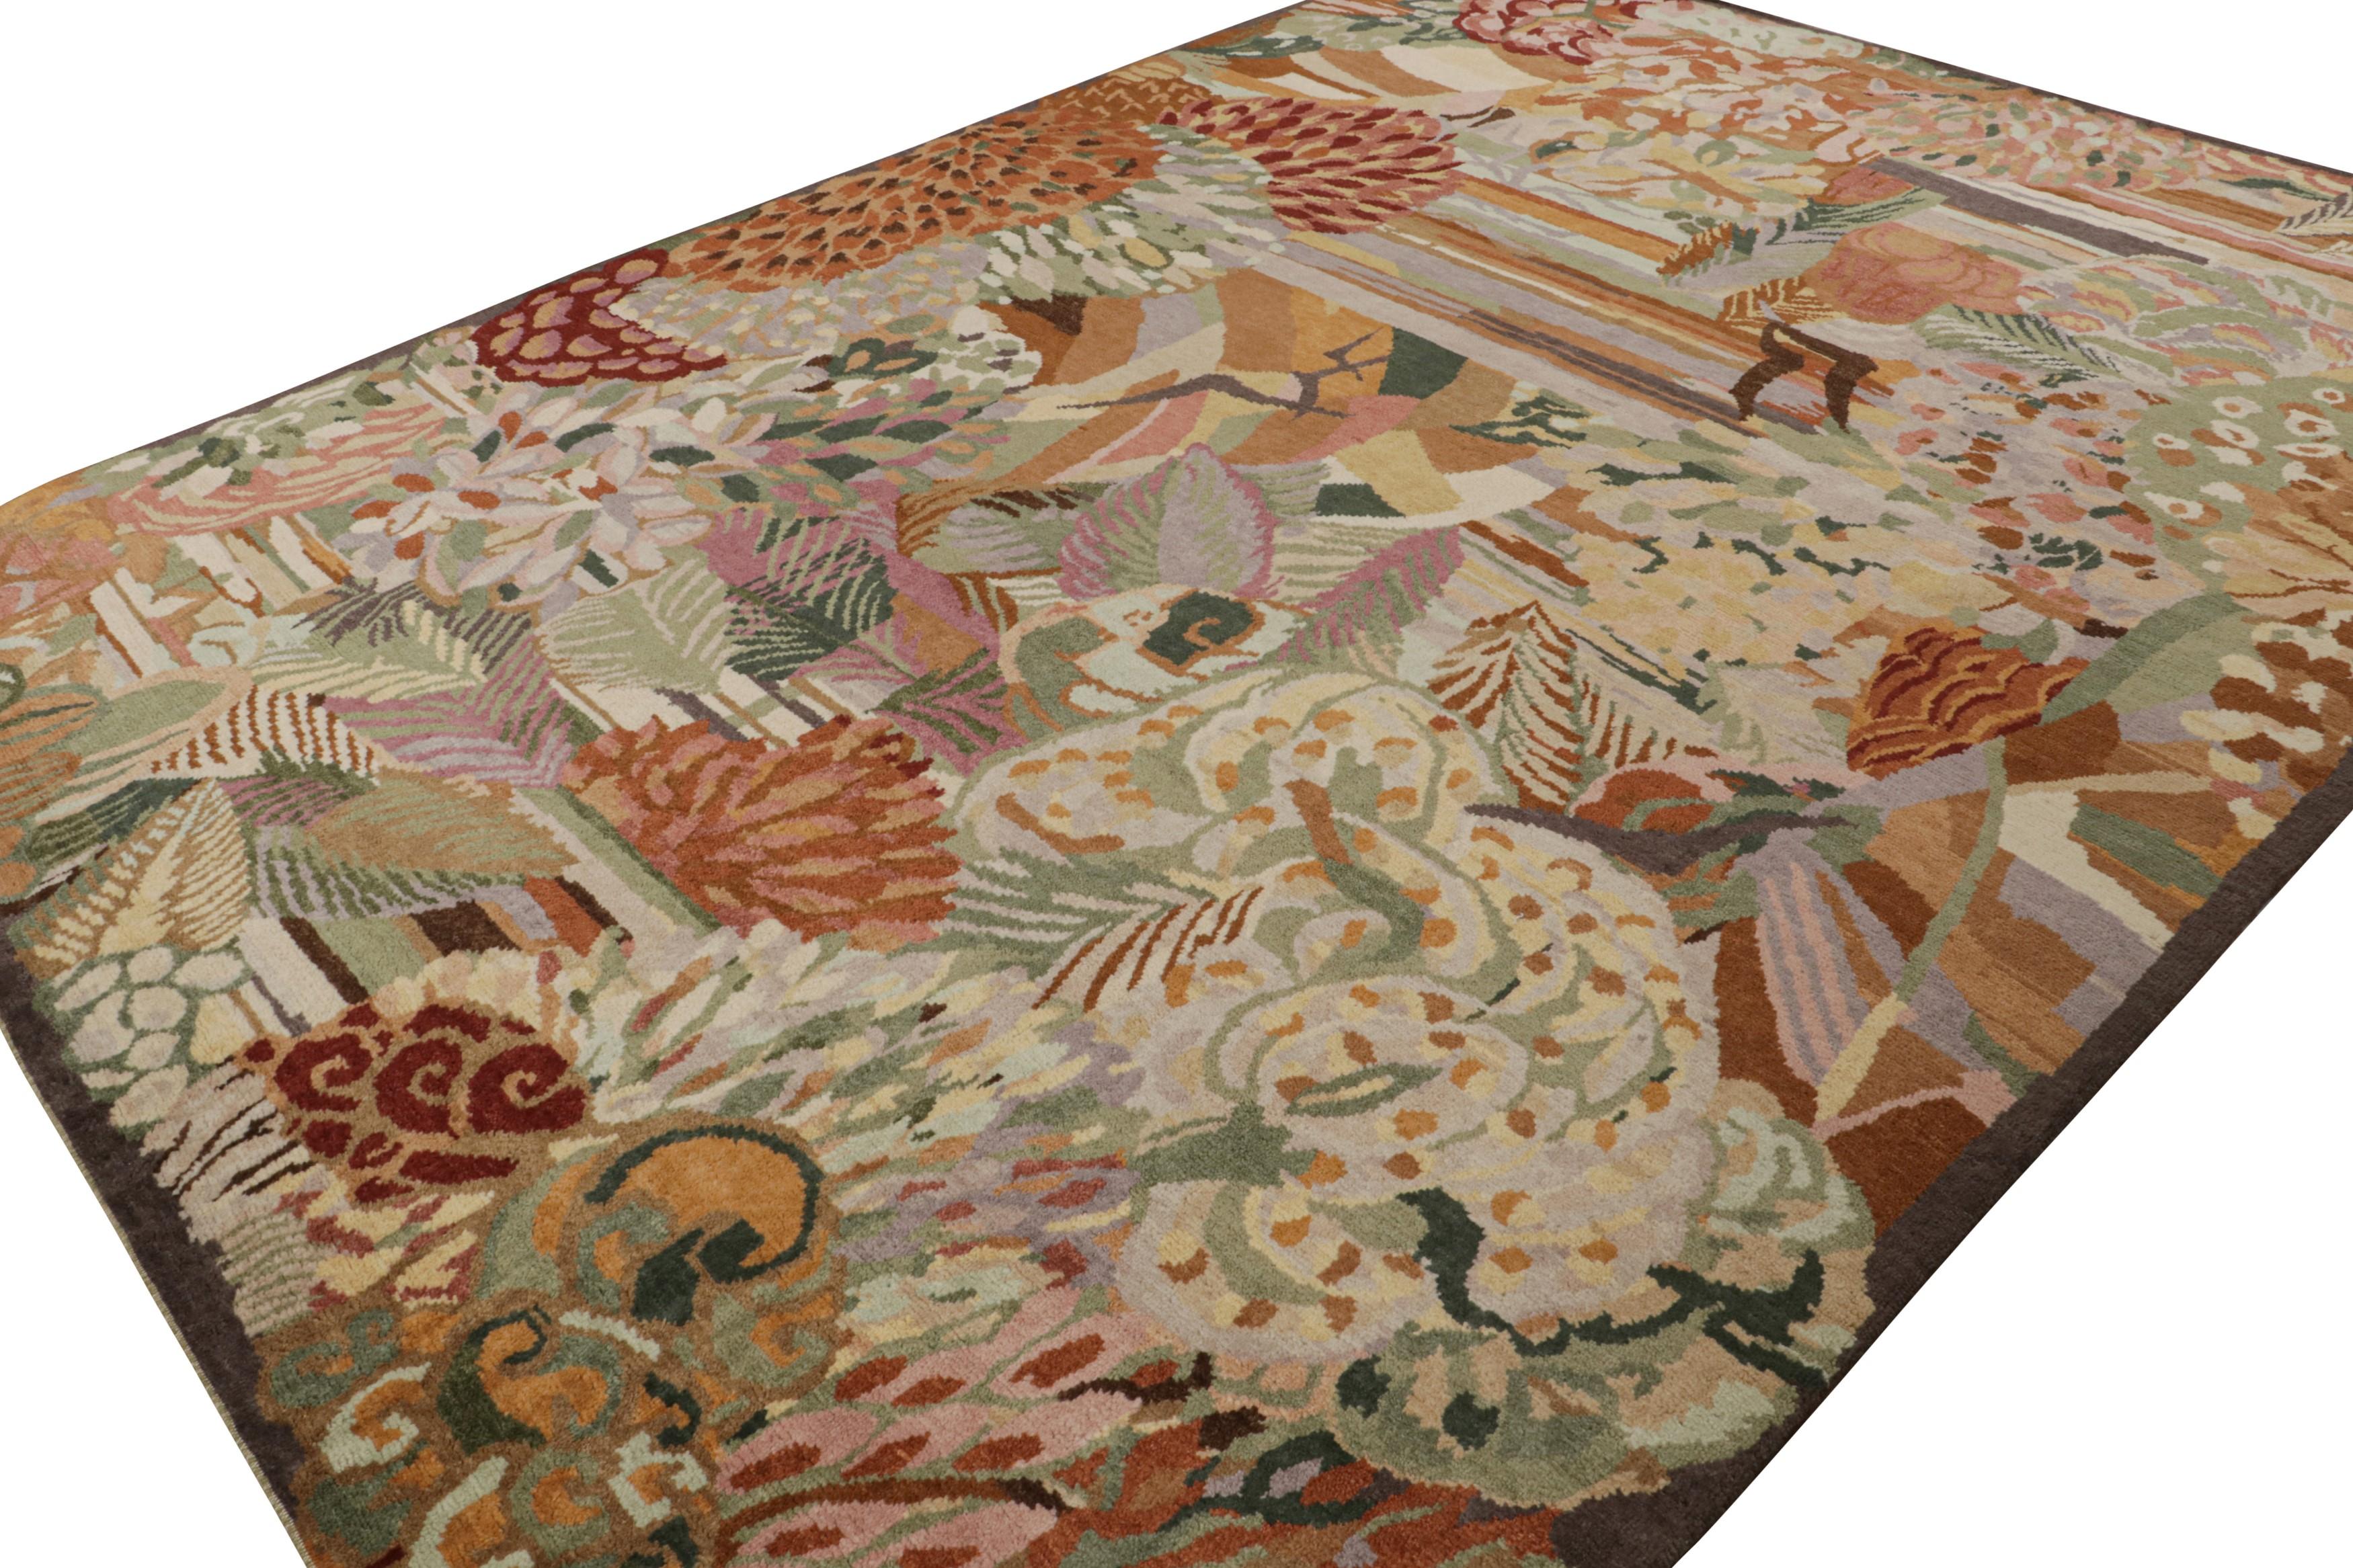 Cette ode 10x14 aux tapis Art déco français est le prochain ajout à la nouvelle collection Deco de Rug & Kilim. Noué à la main en laine.

Sur le Design :  

Cette pièce arbore le style déco des années 1920 avec des fleurs polychromes luxuriantes